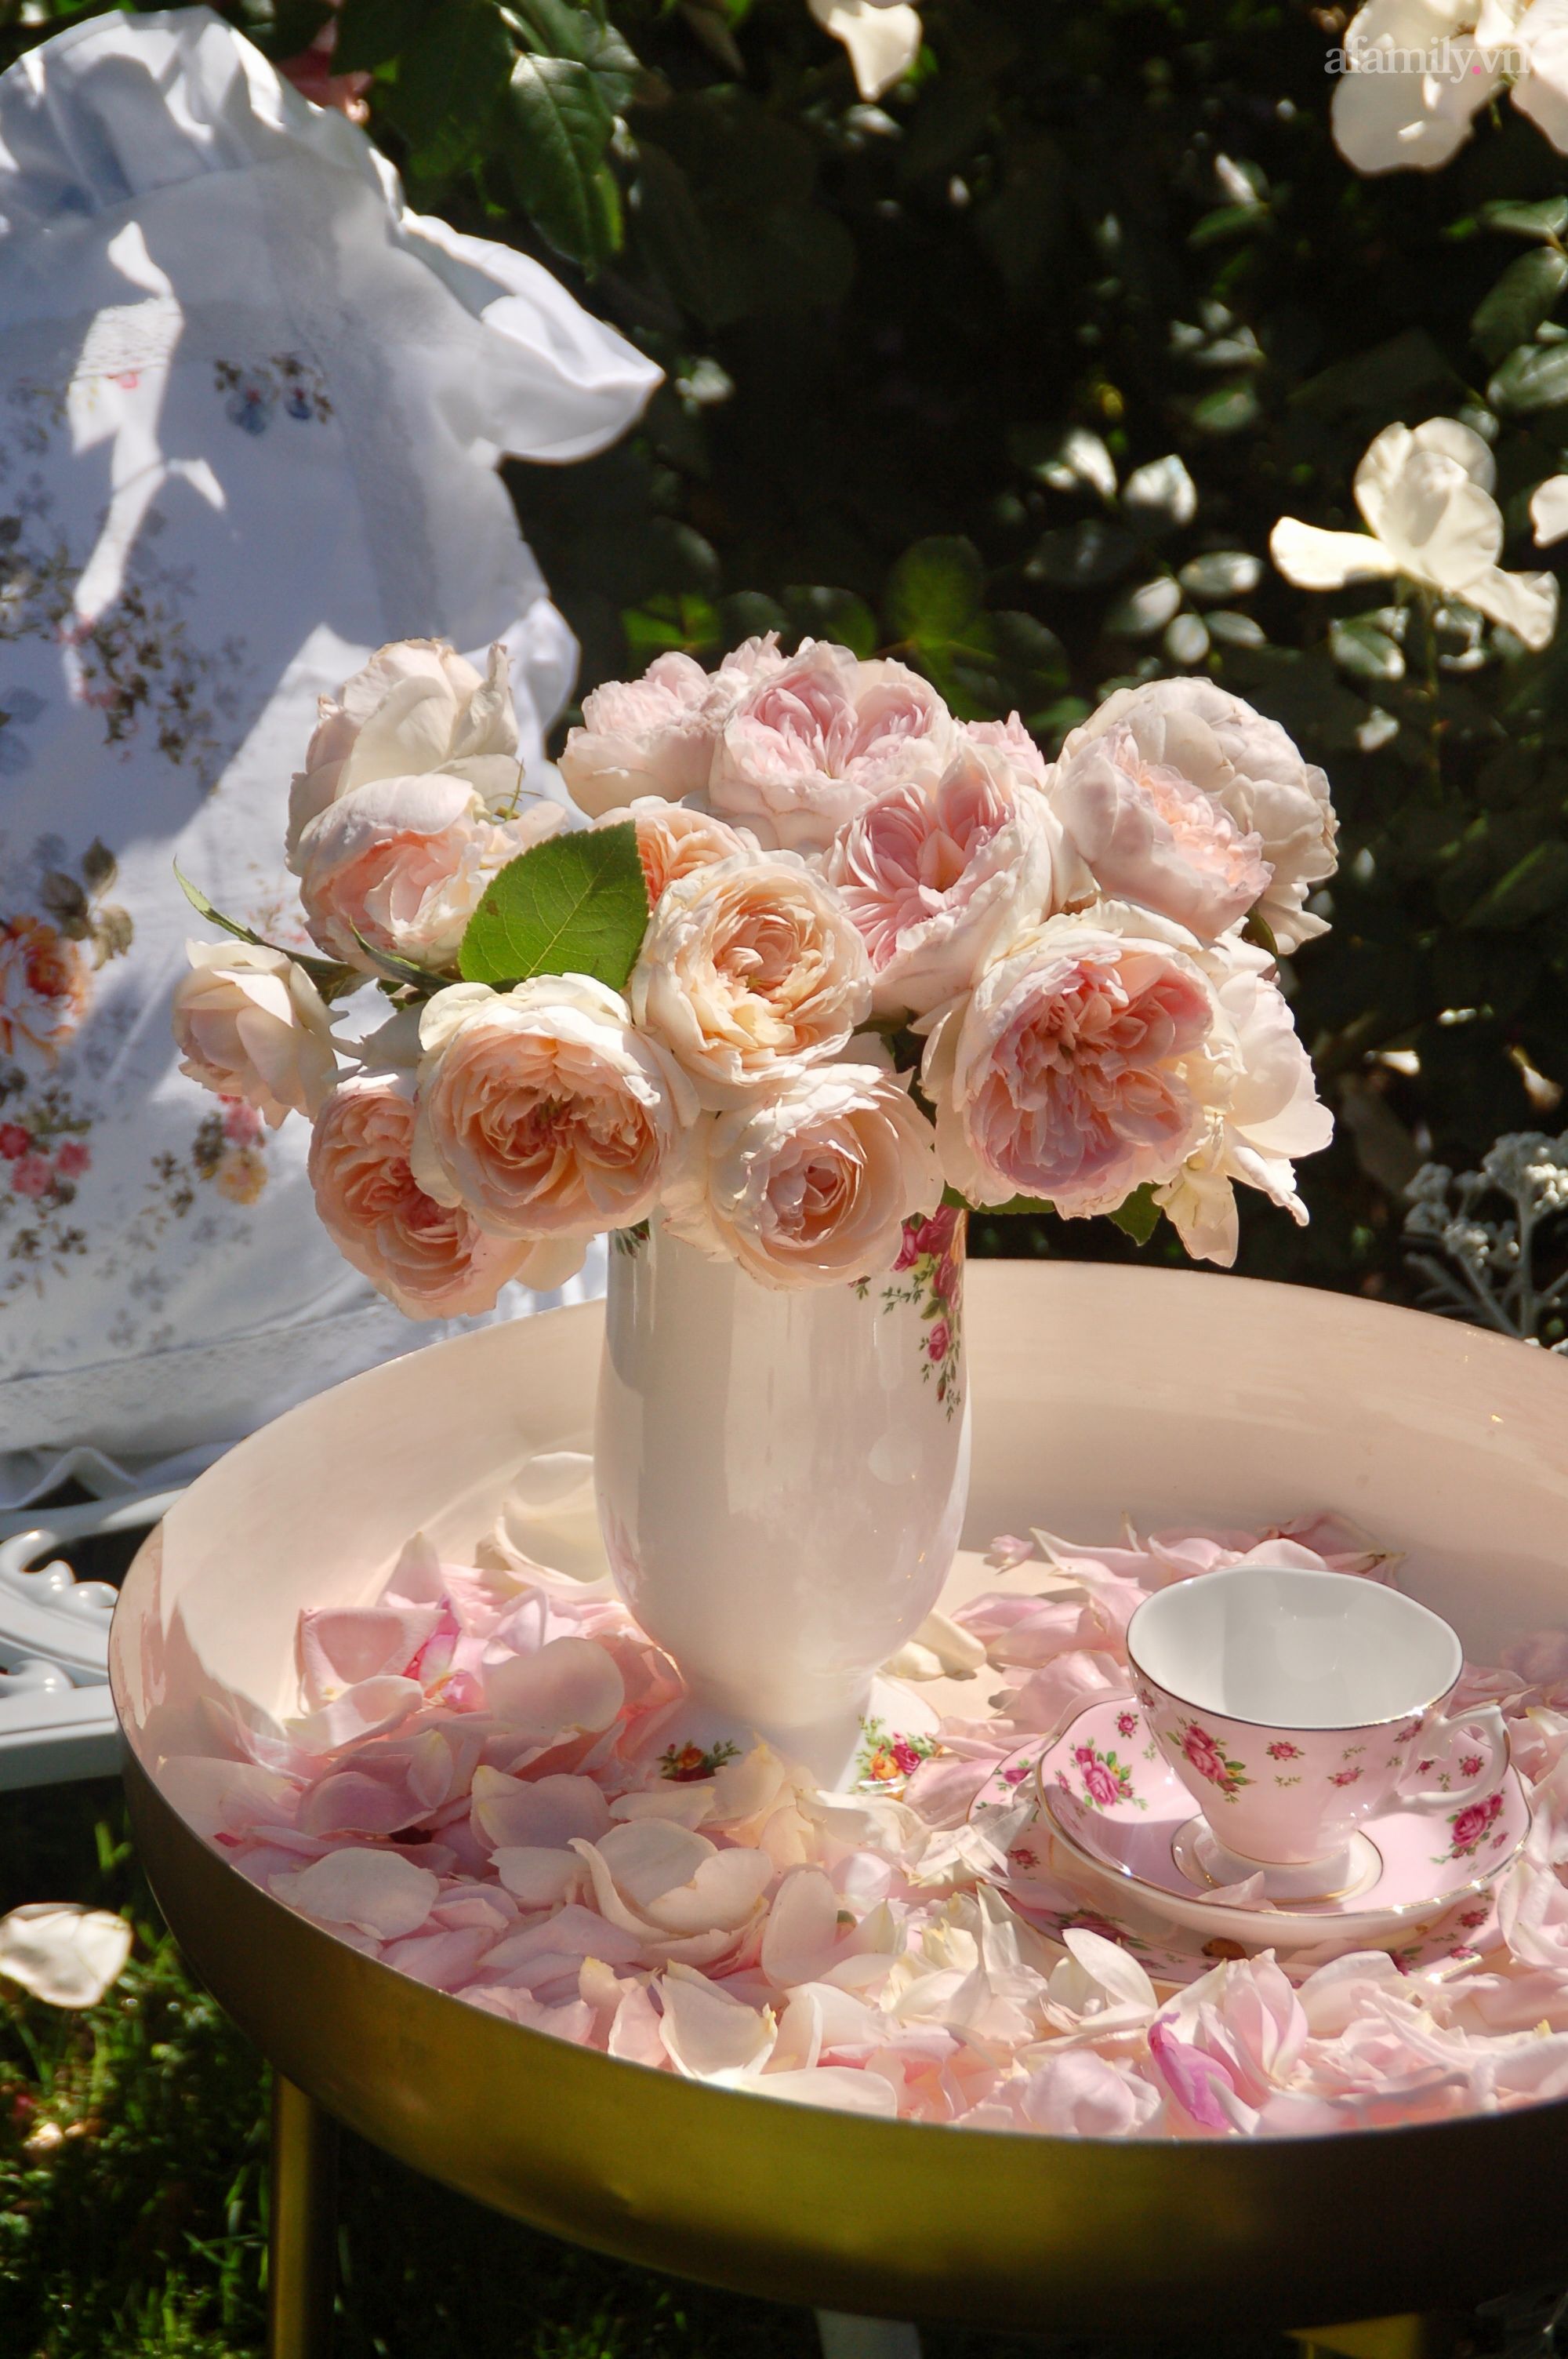 Khu vườn hoa hồng: Khu vườn hoa hồng rực rỡ và ngát hương sẽ là nơi tuyệt vời để tránh xa khỏi cuộc sống bộn bề, đôi khi căng thẳng. Hãy chiêm ngưỡng những bông hồng đẹp nhất trong khu vườn hoa, và cảm nhận vẻ đẹp tuyệt vời của tình yêu và nghệ thuật.